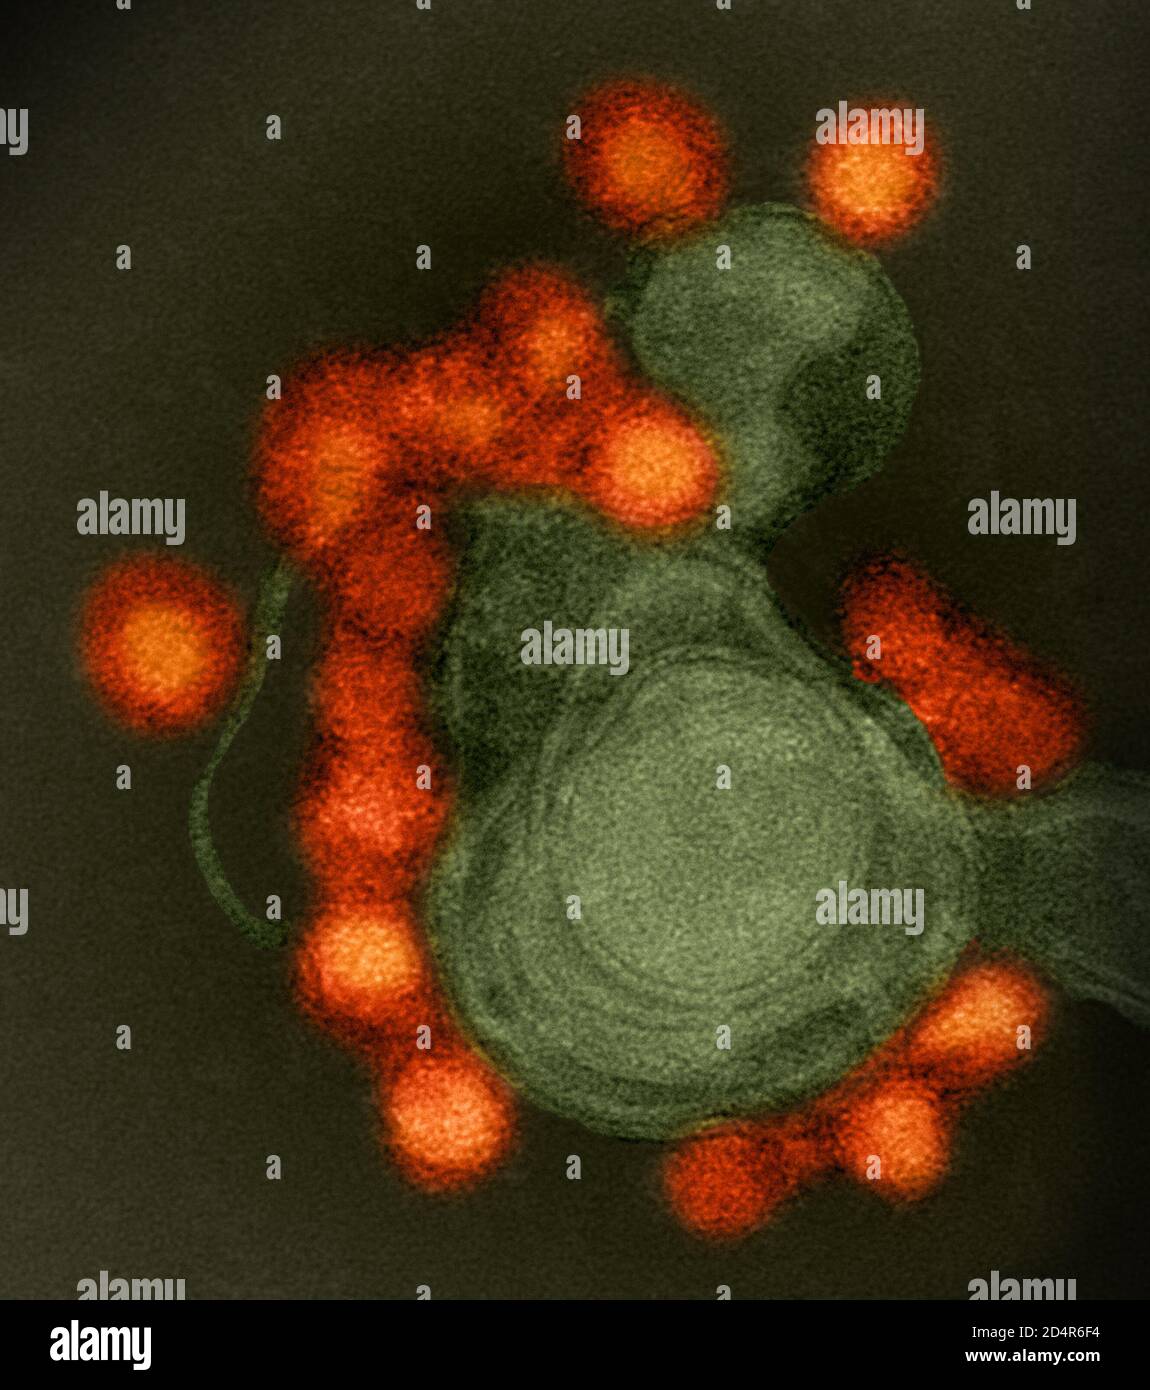 Immagine al microscopio elettronico a trasmissione del virus Zika (rosso) con colorazione negativa, ceppo Fortaleza, isolato da un caso di microcefalia in Brasile. Foto Stock